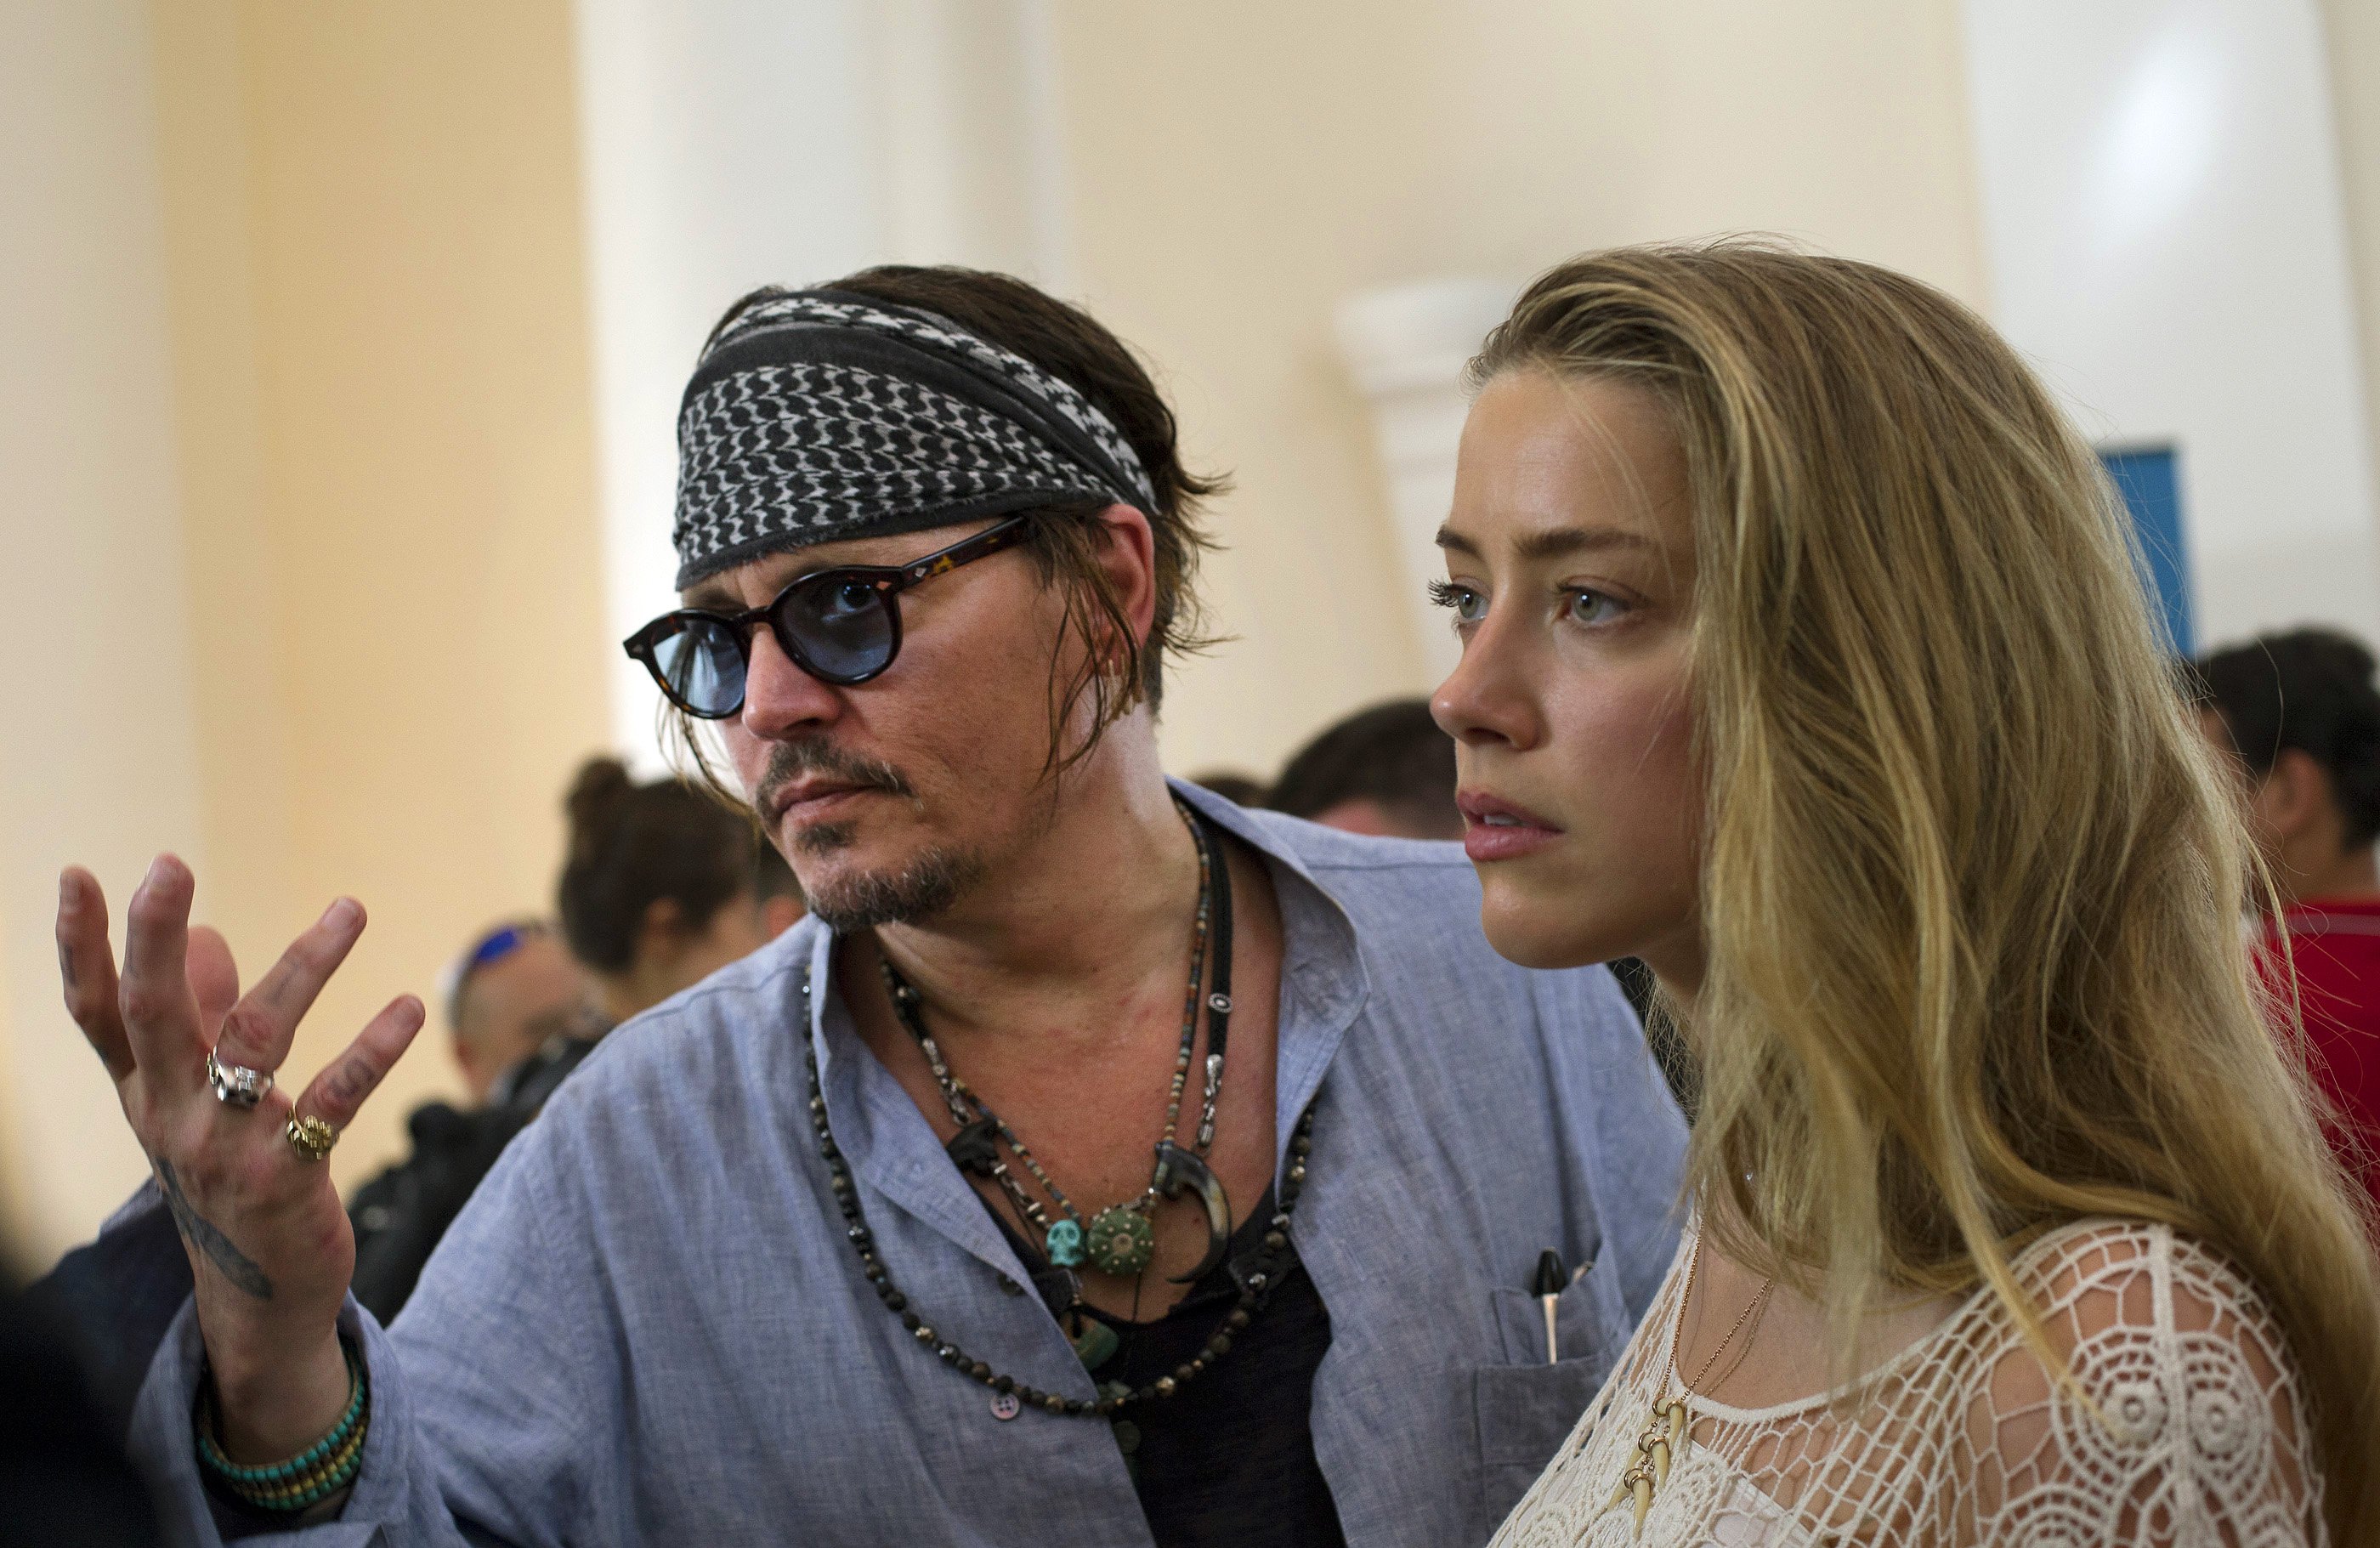 S'ha acabat: final als judicis entre Johnny Depp i Amber Heard